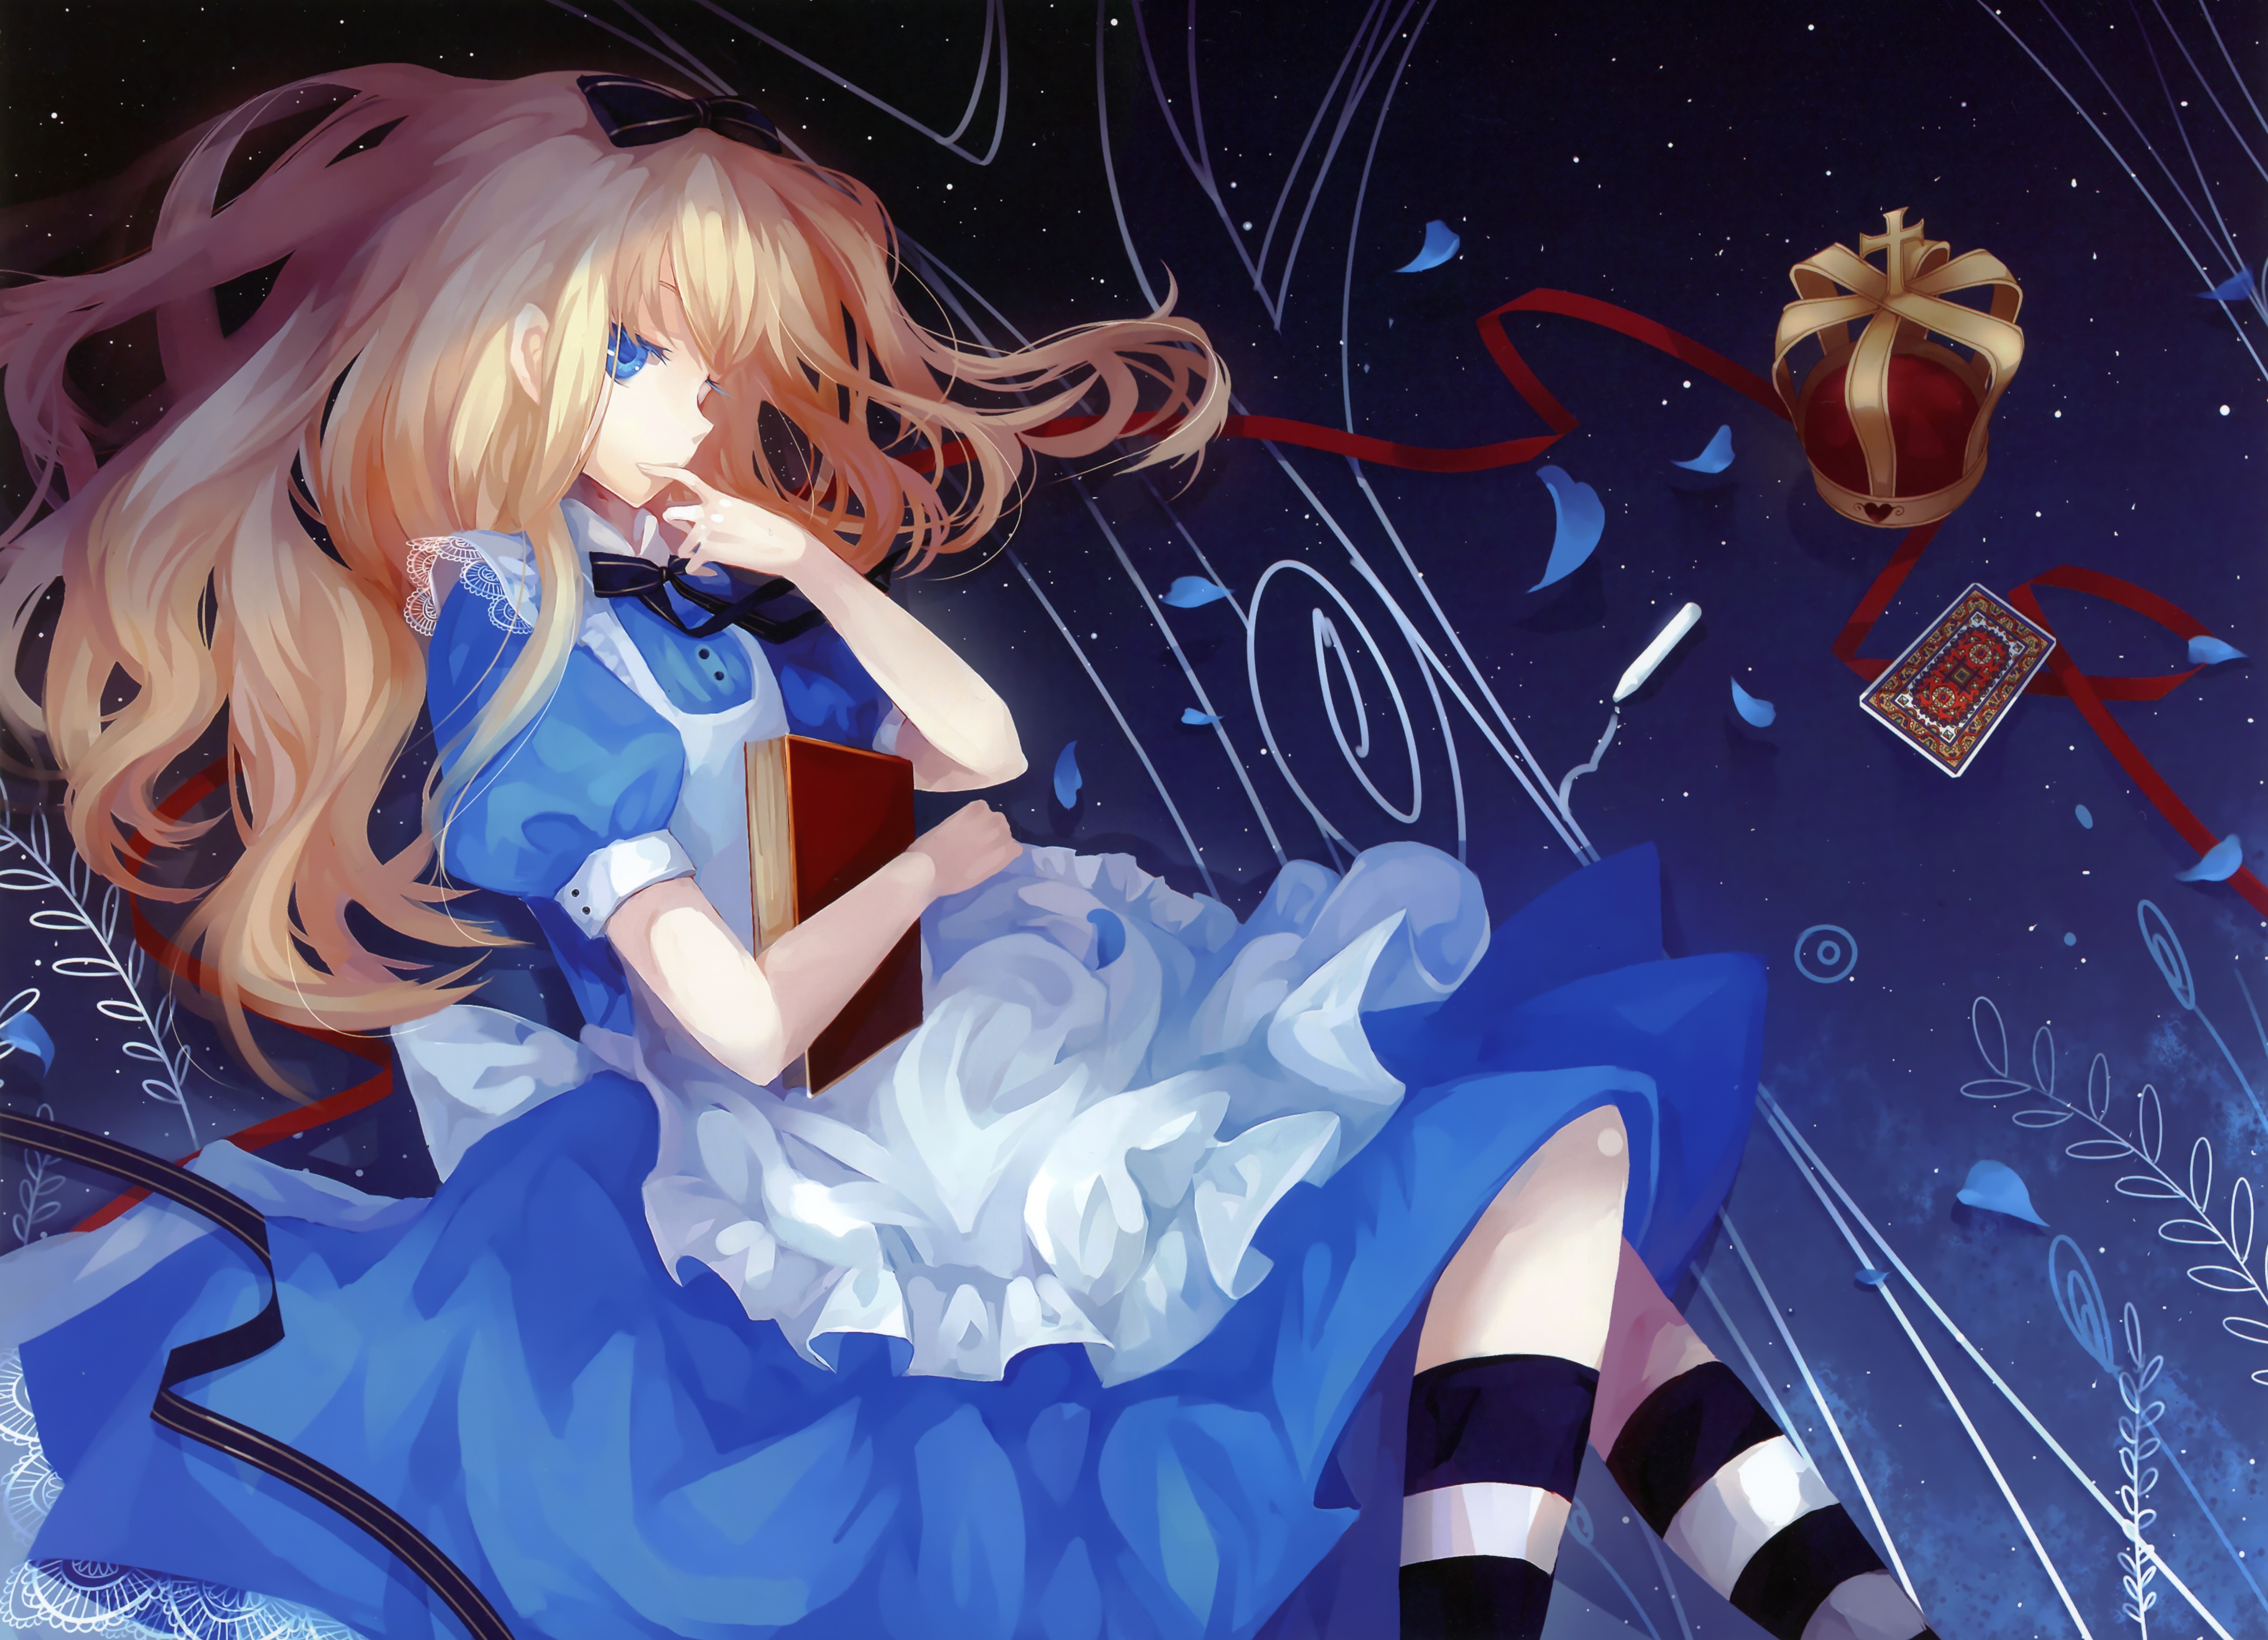 Anime 4212x3046 Alice in Wonderland anime anime girls dress blue dress long hair fantasy art fantasy girl